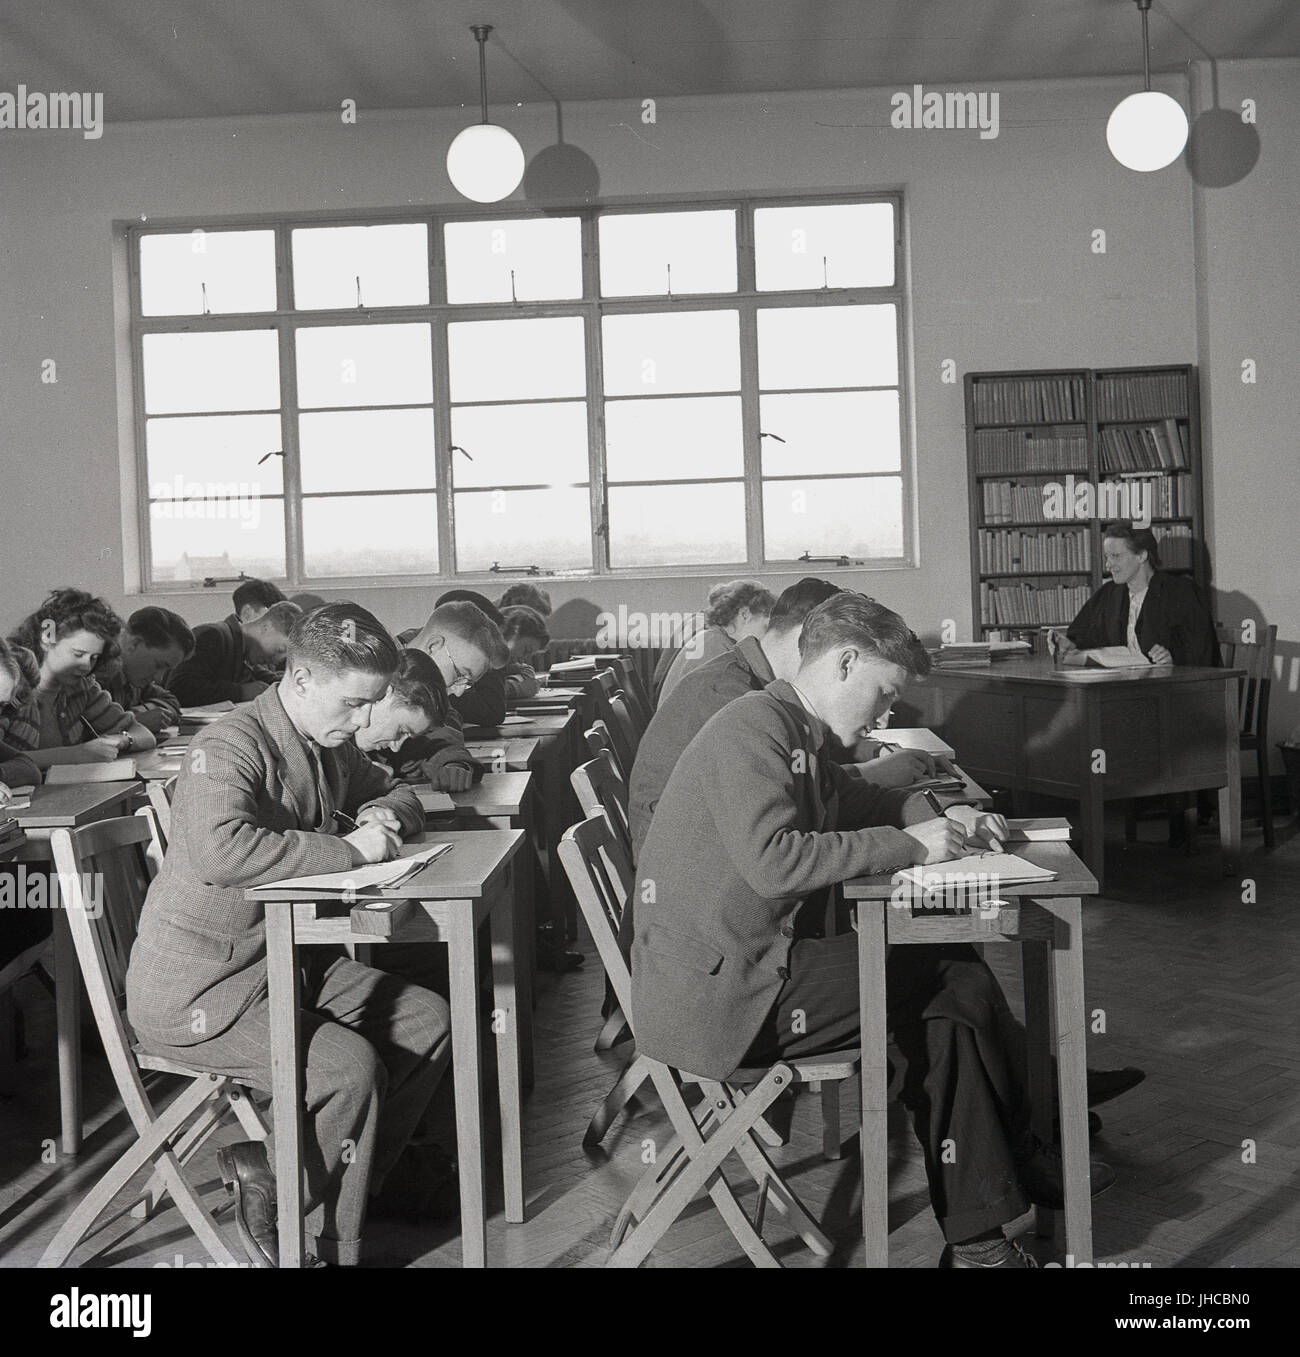 1950, historische, Studenten sitzen in einer Linie bei kleinen Schreibtisch in einem Klassenzimmer, Notizen, England, UK. Stockfoto